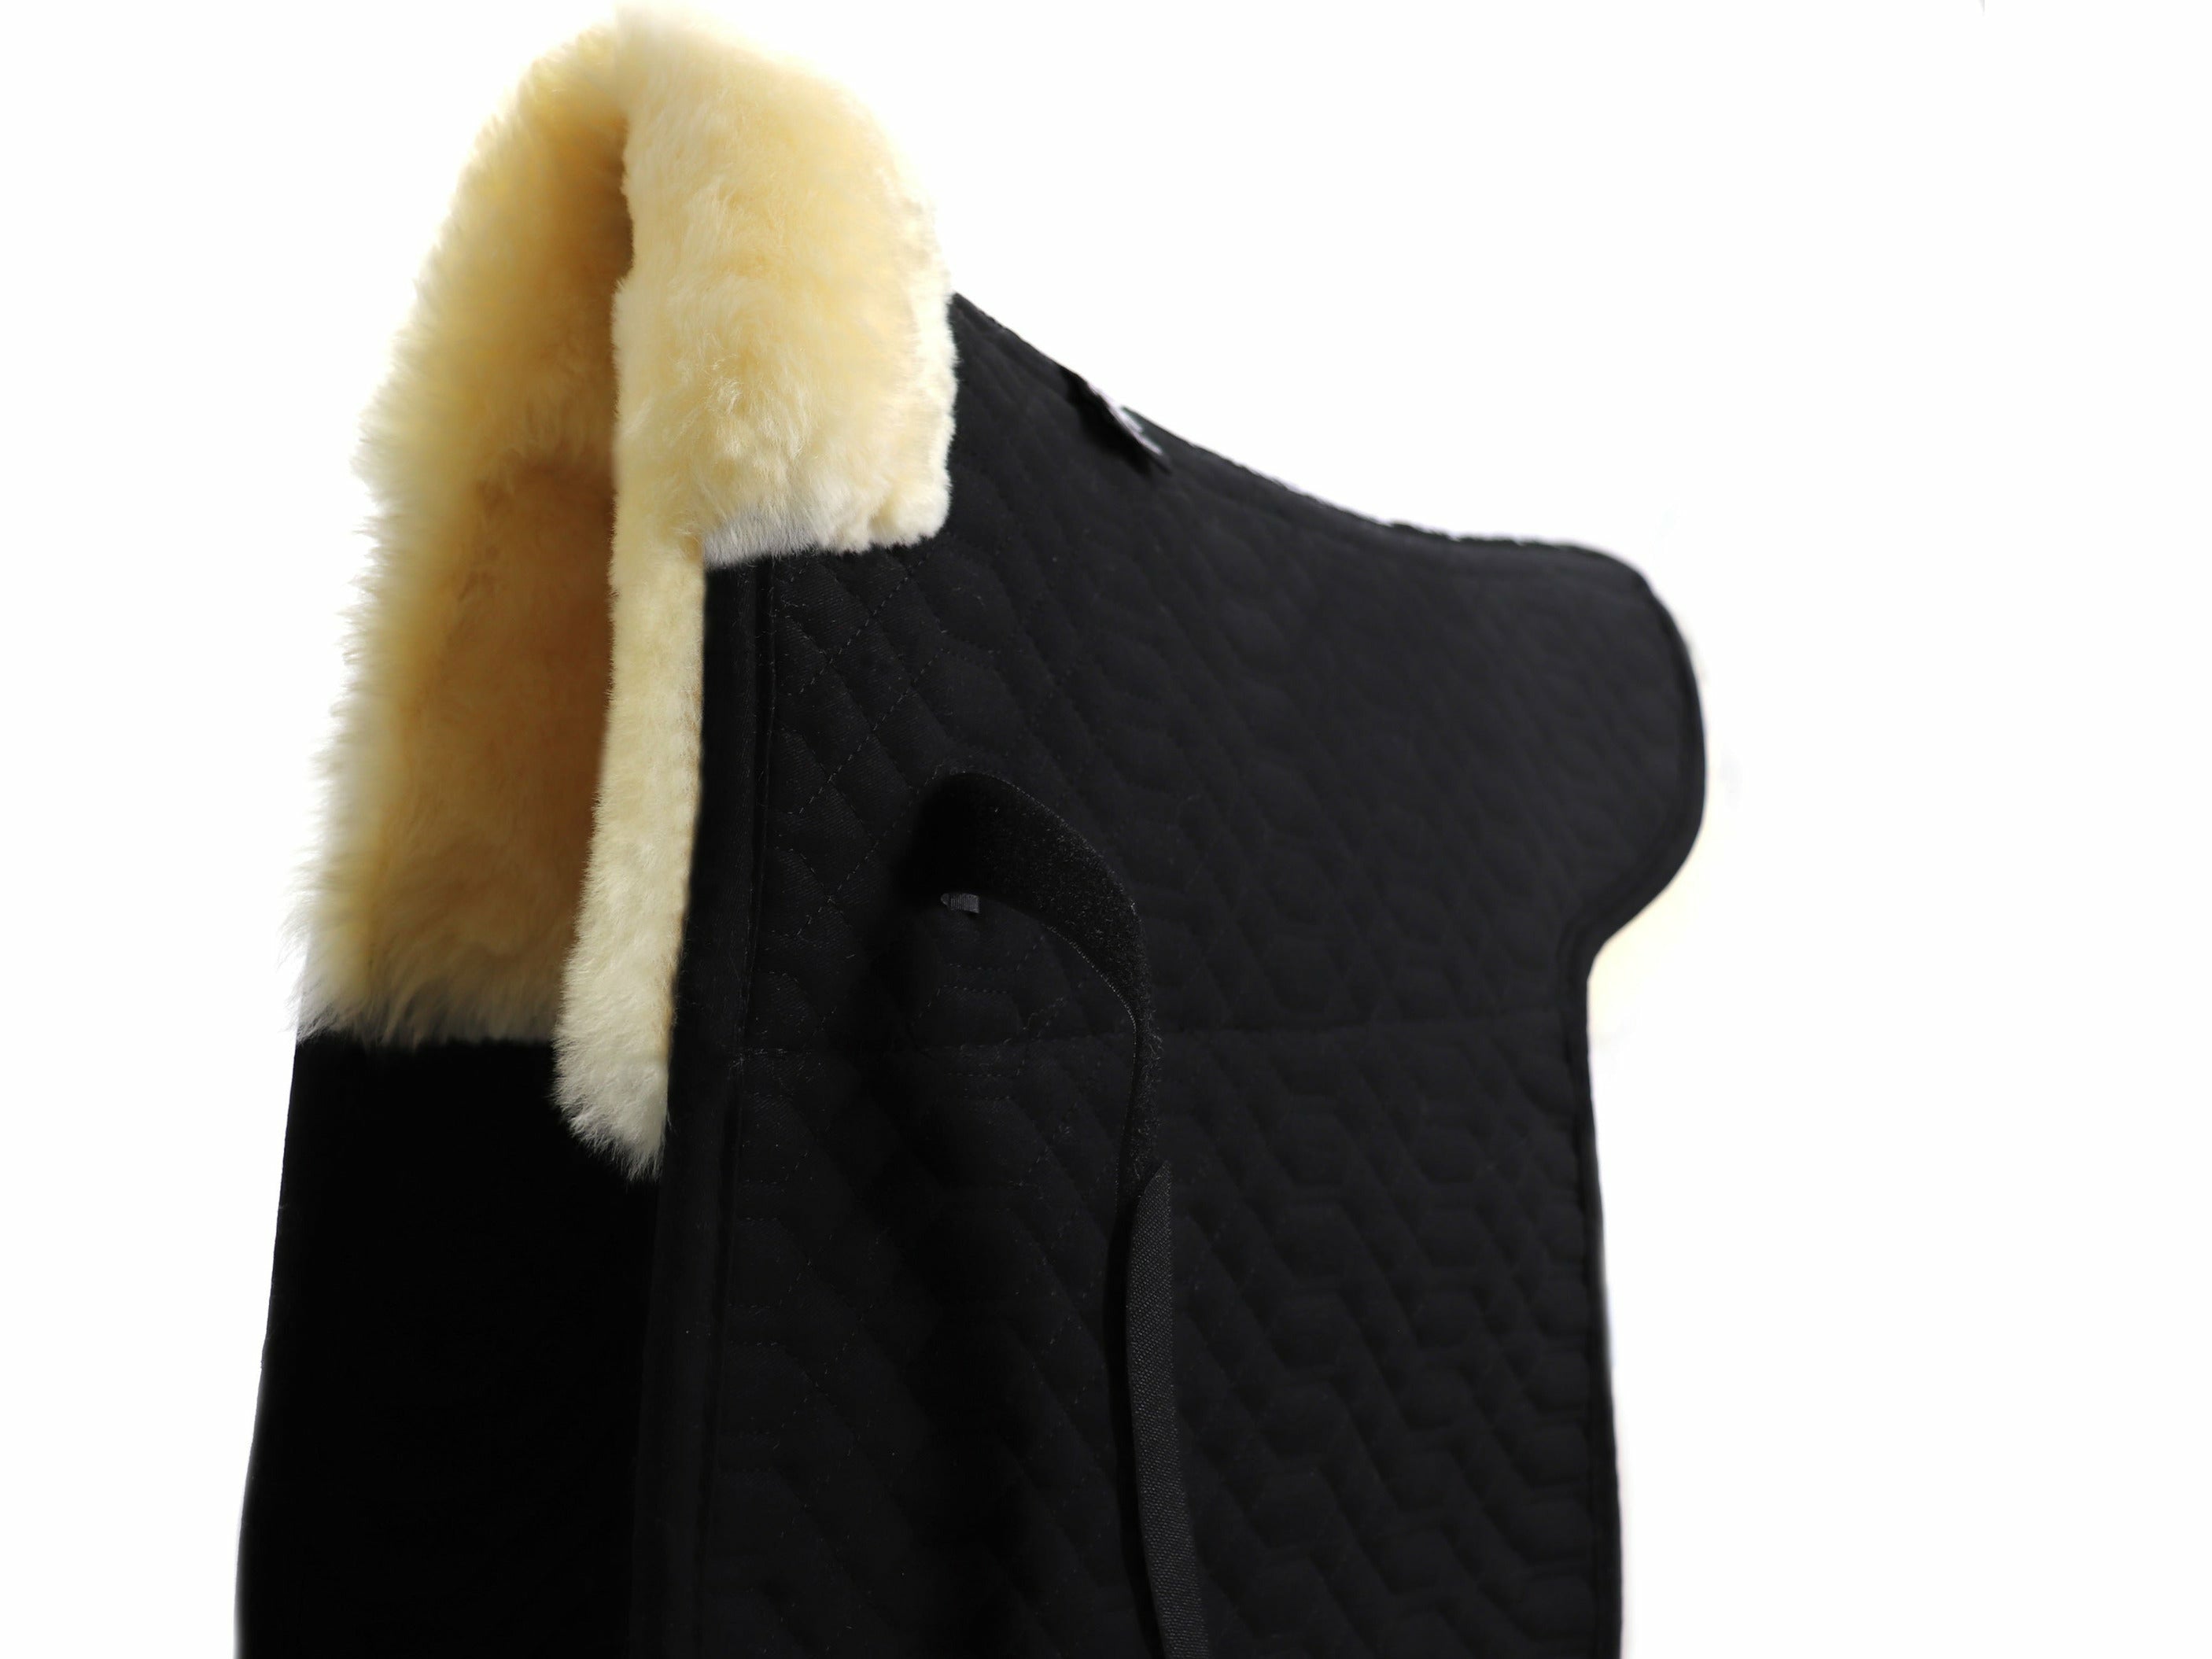 Die hochwertige Satteldecke aus Baumwolle und 100% australischem Merino Lammfell schont Isi und Reiter. Die komfortable Sattelunterlage mit Fell im Sattelsitzbereich und Fellkranz vorne ist speziell für Islandpferde entwickelte wurden.